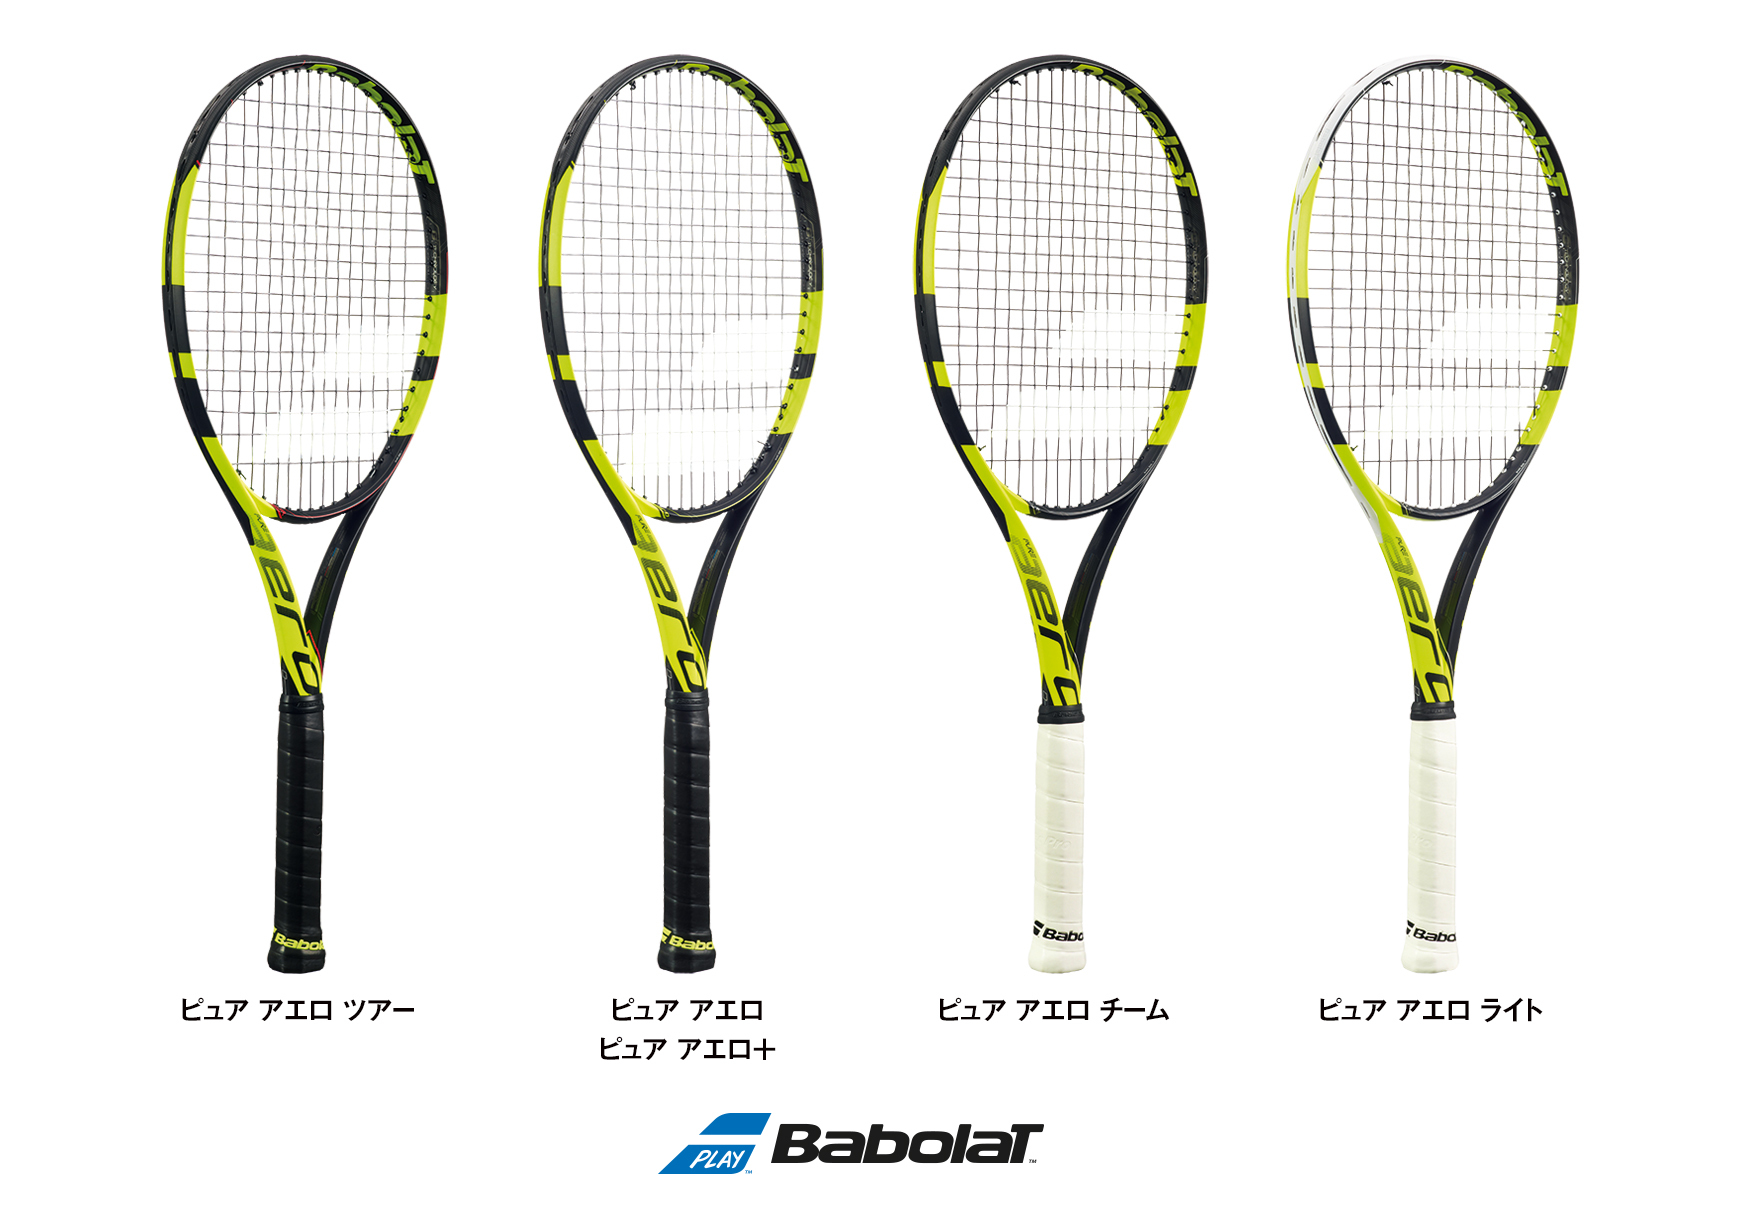 世界的に有名なテニスバボラテニスラケット「ピュア アエロ」シリーズ5機種を新発売